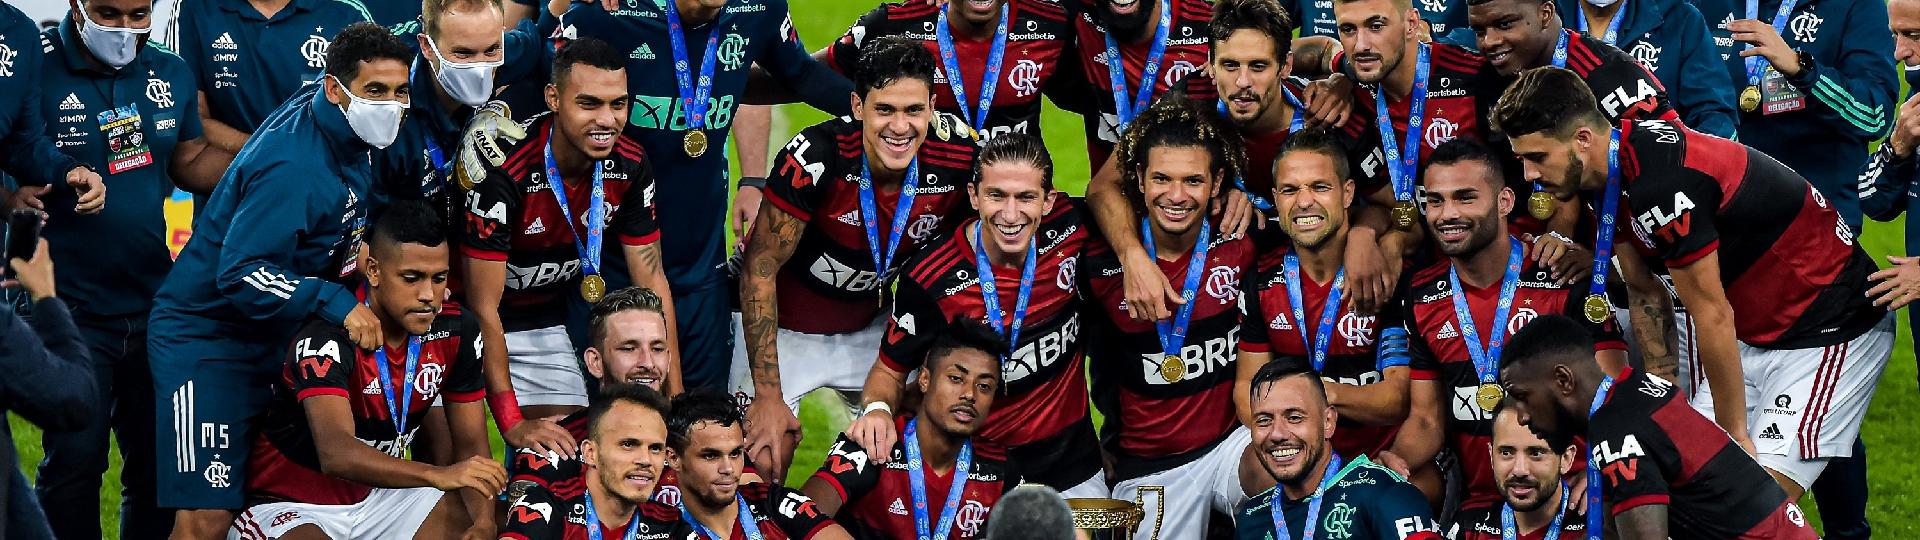 Flamengo é campeão do Campeonato Carioca 2020